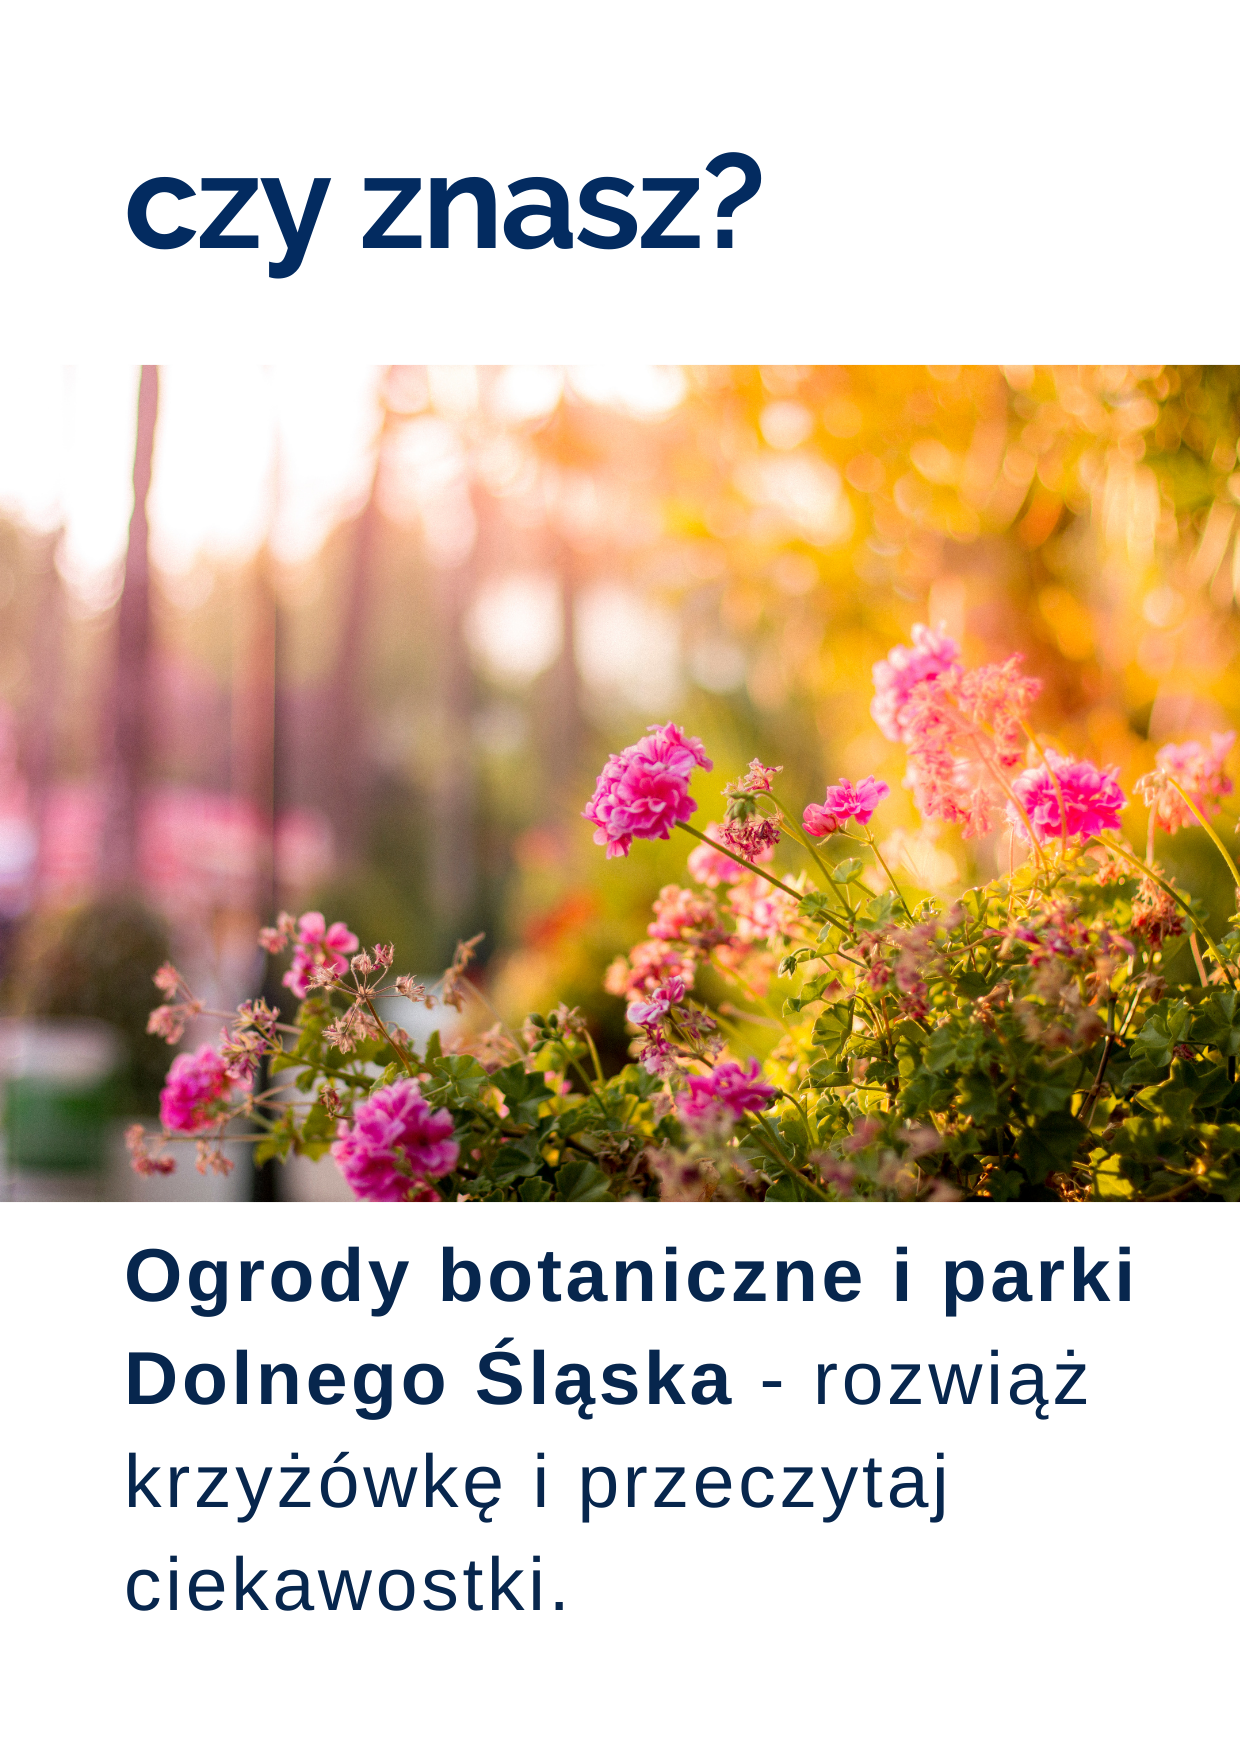 Zagadka tygodnia o Dolnym Śląsku: ogrody botaniczne i parki